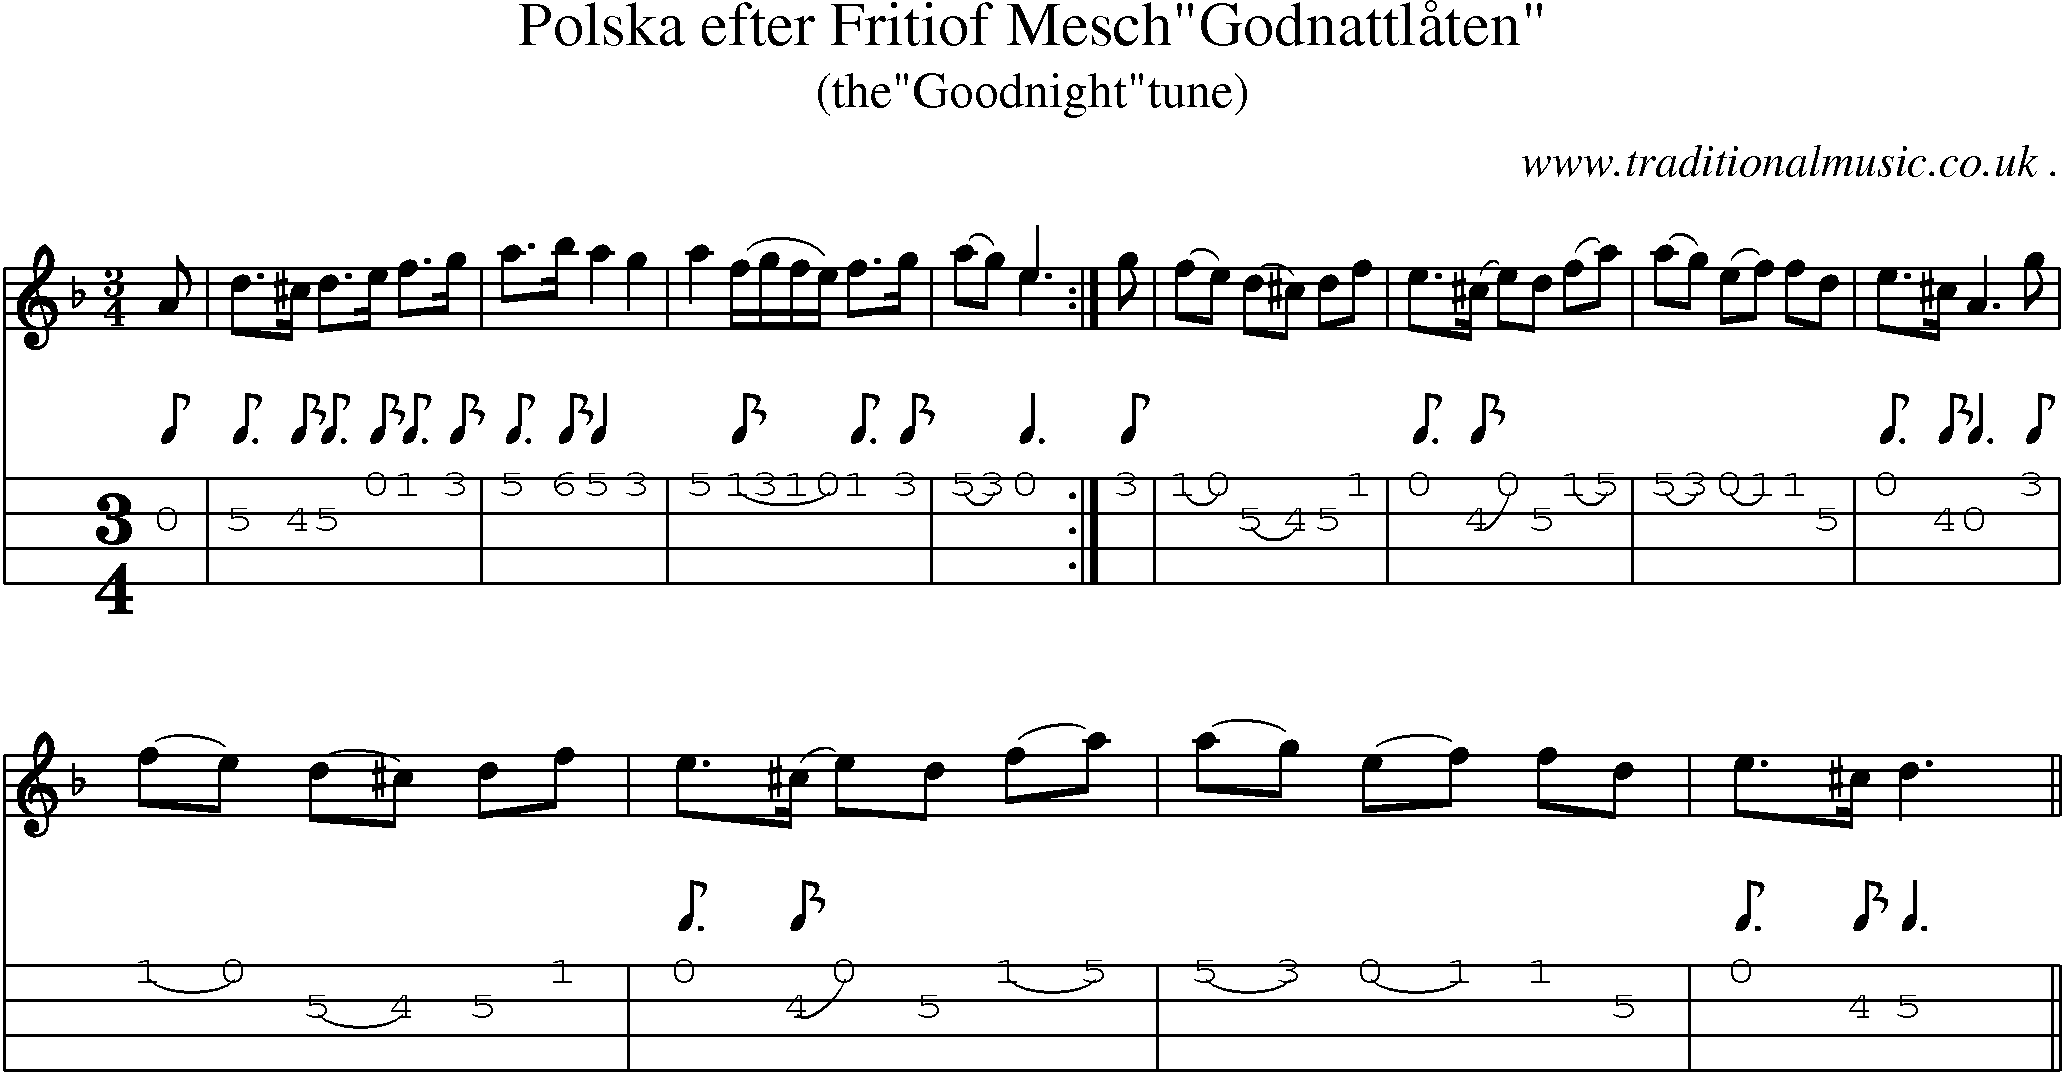 Sheet-Music and Mandolin Tabs for Polska Efter Fritiof Meschgodnattlaaten